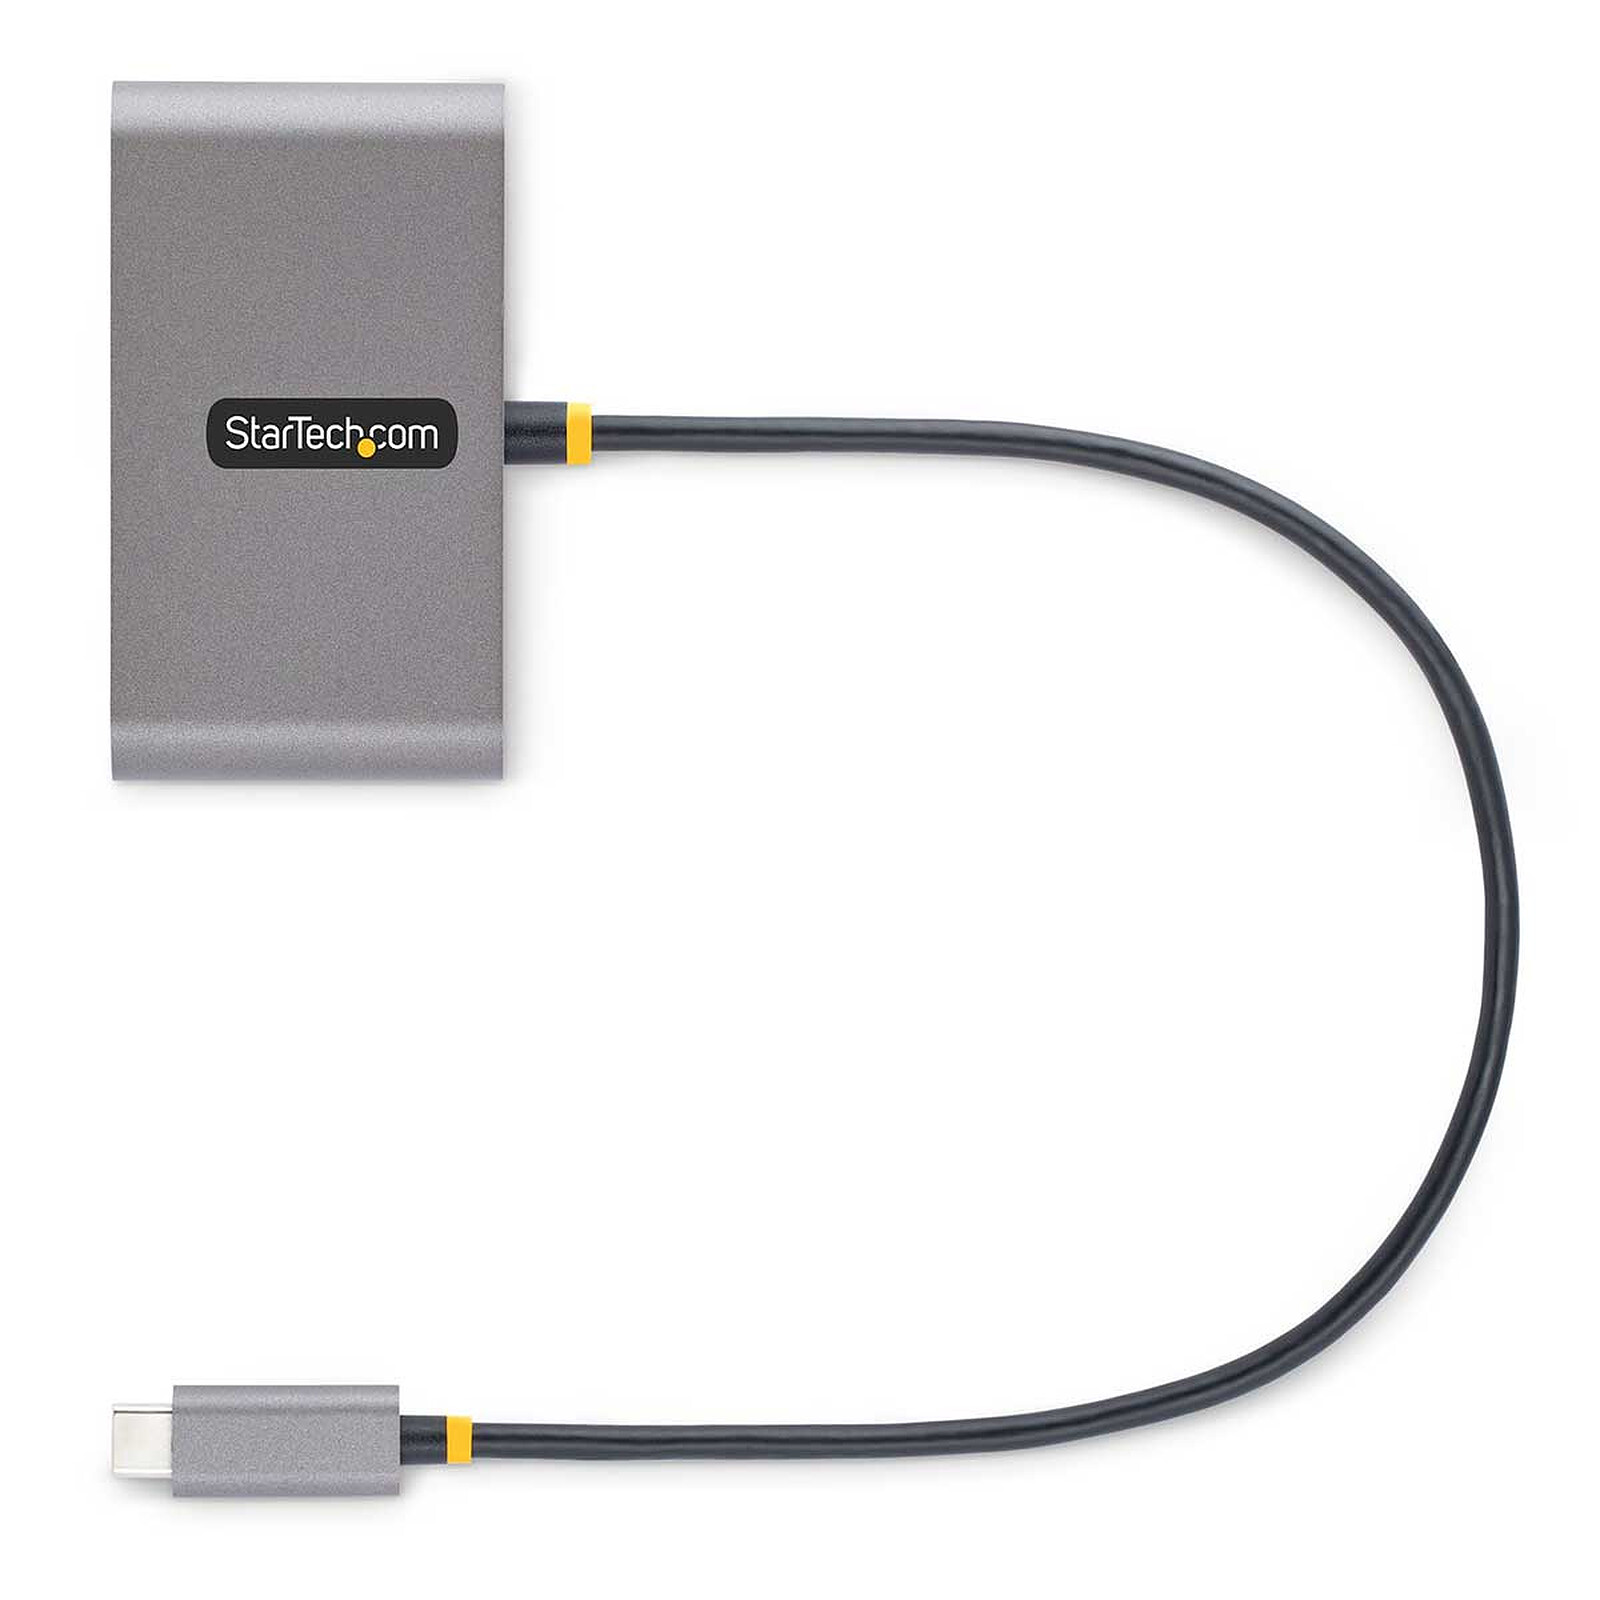 StarTech.com Mini Hub USB 3.0 à 4 ports avec port de charge et adaptateur d' alimentation inclus - Hub USB - Garantie 3 ans LDLC